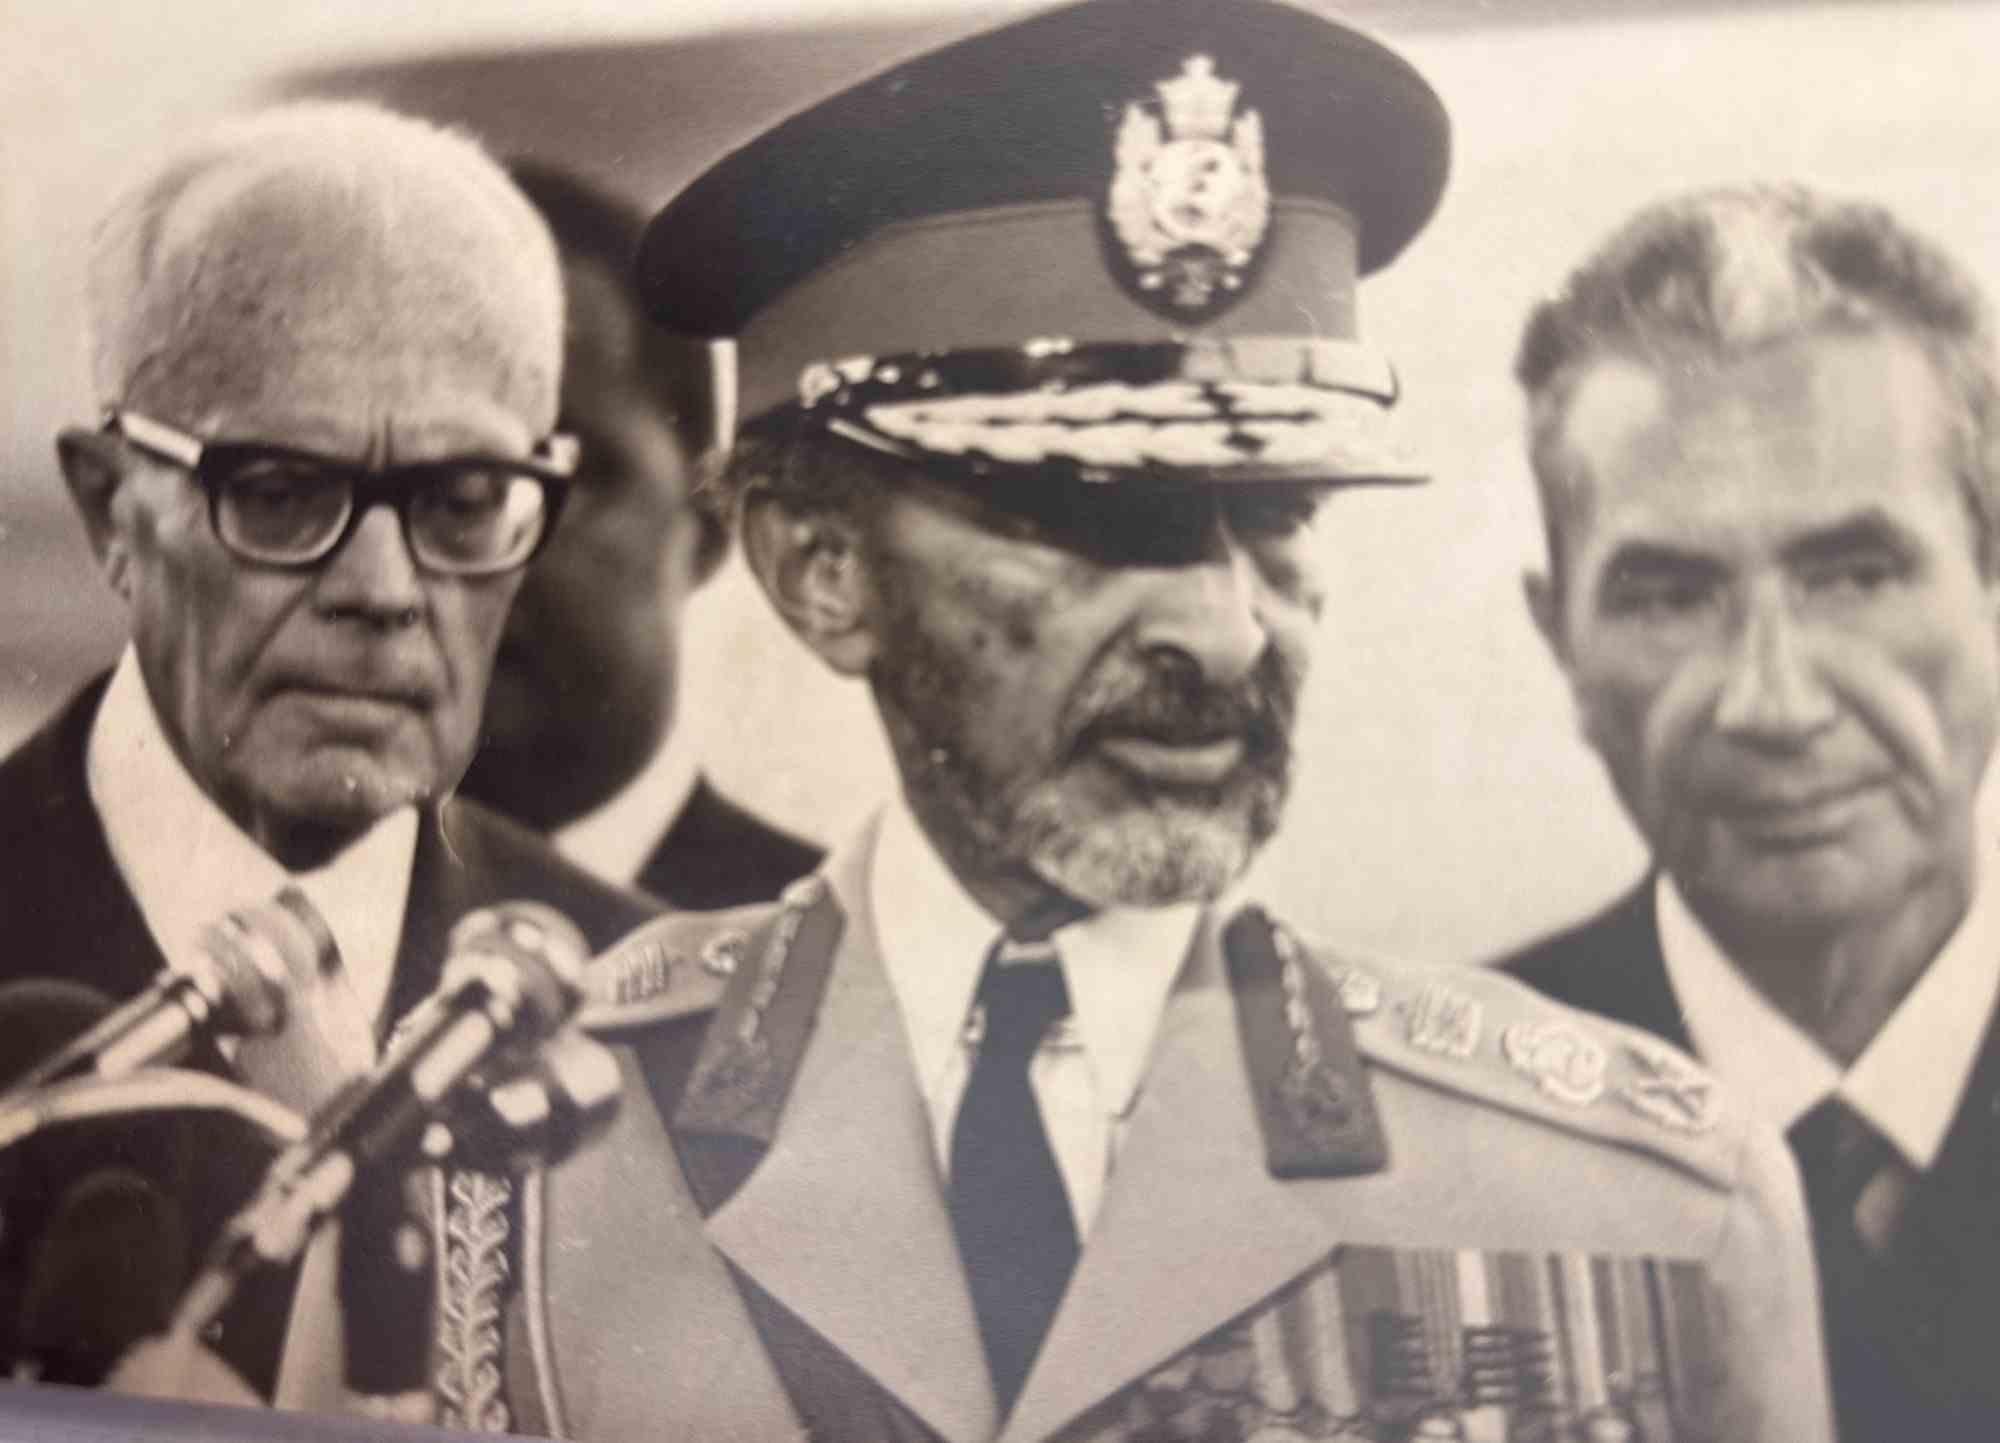 Unknown Figurative Photograph - Haile Selassie, Sandro Pertini and Aldo Moro - Vintage Photo - 1970s